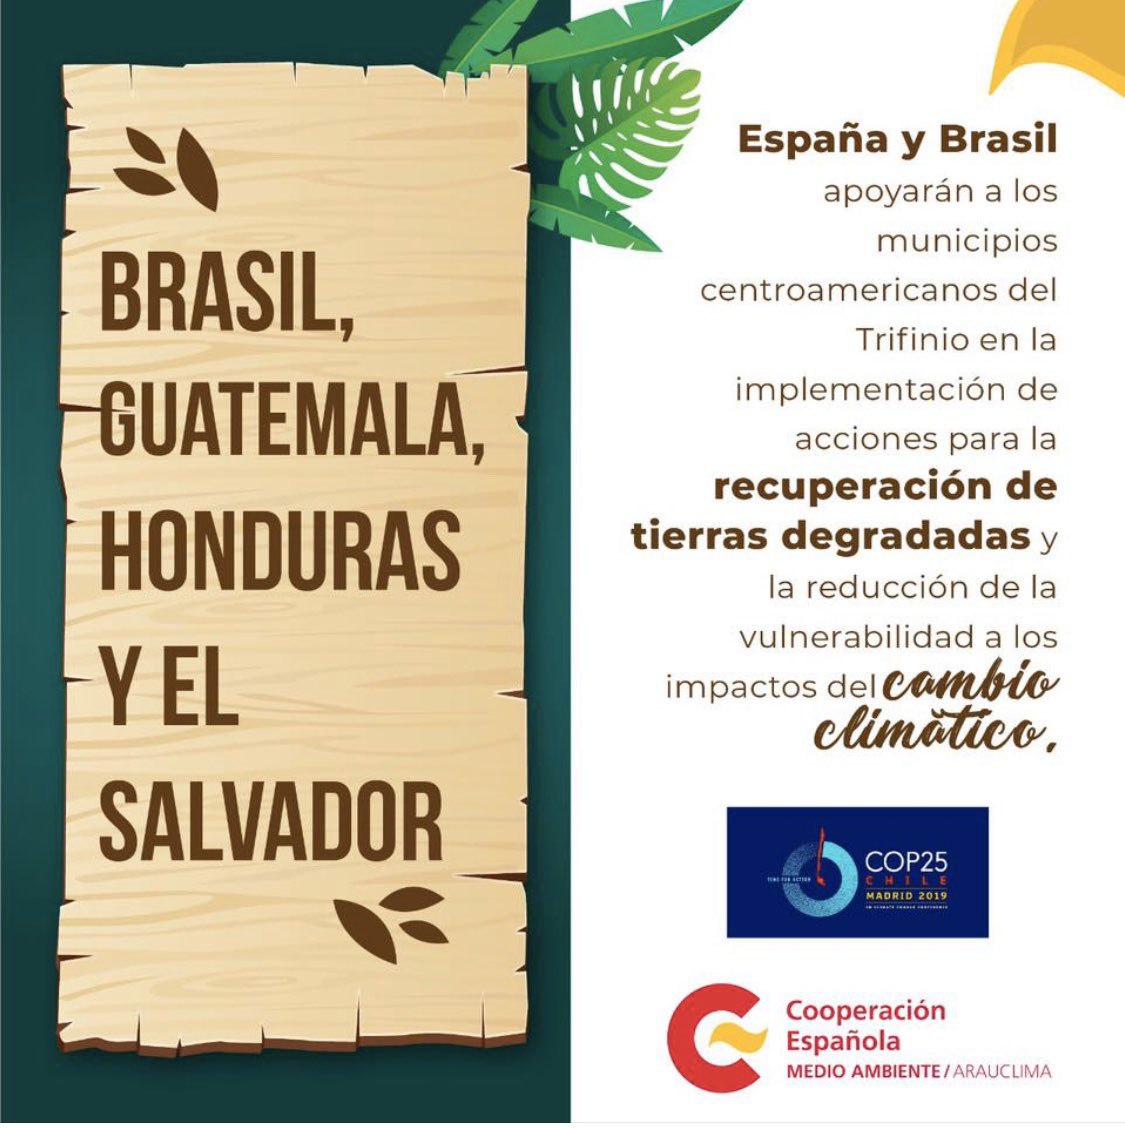 Honduras es uno de los países más vulnerables por el cambio climático. En el marco del Programa #ARAUCLIMA , se apoyarán acciones para la recuperación de tierras degradadas y reducir el impacto del #CambioClimático 🌎 @COP25CL @AECID_es @CooperacionESP @MIAMBIENTE_HN